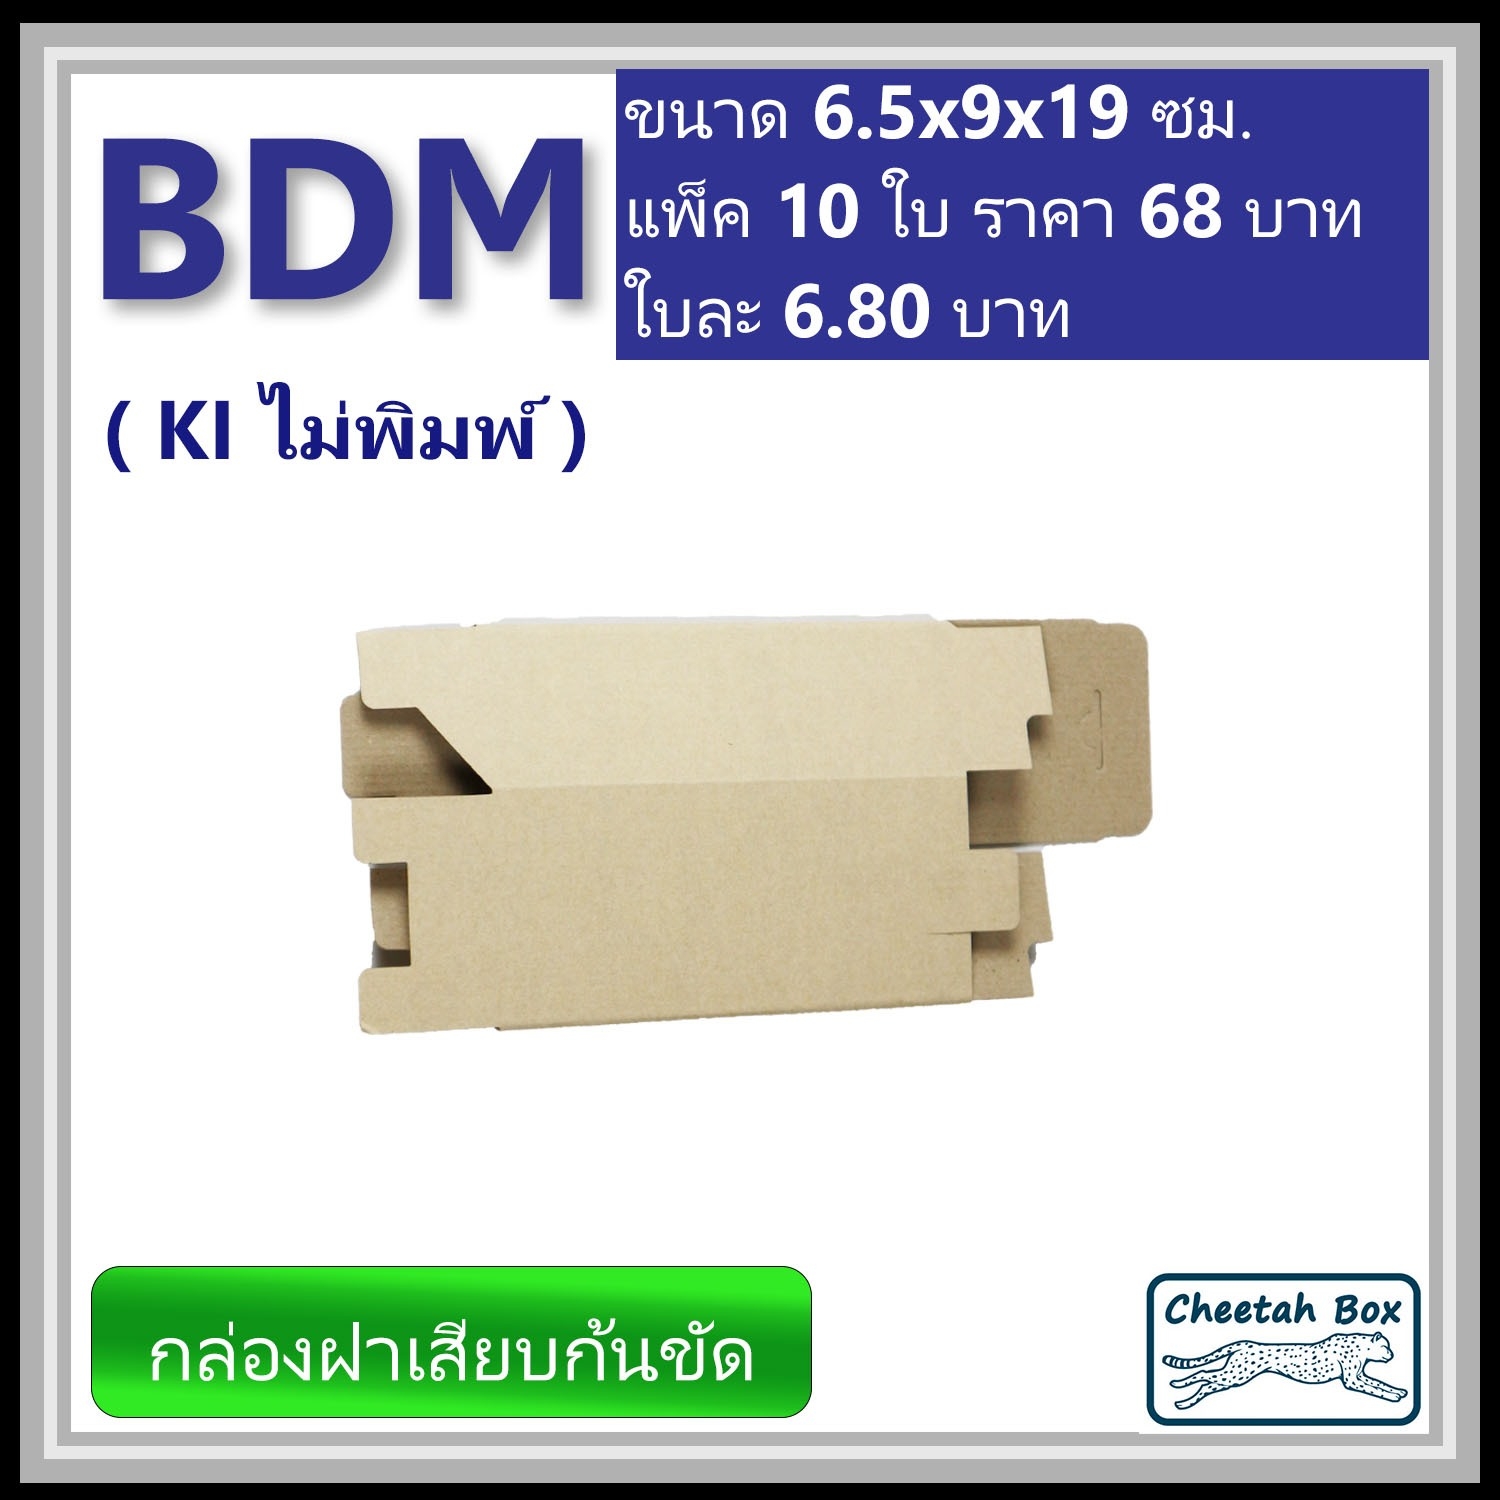 กล่องไดคัททรงสูง ฝาขัดก้นเสียบ BDM ไม่พิมพ์ (Die-cut Box) ขนาด 6.5W x 9L x 19H cm.